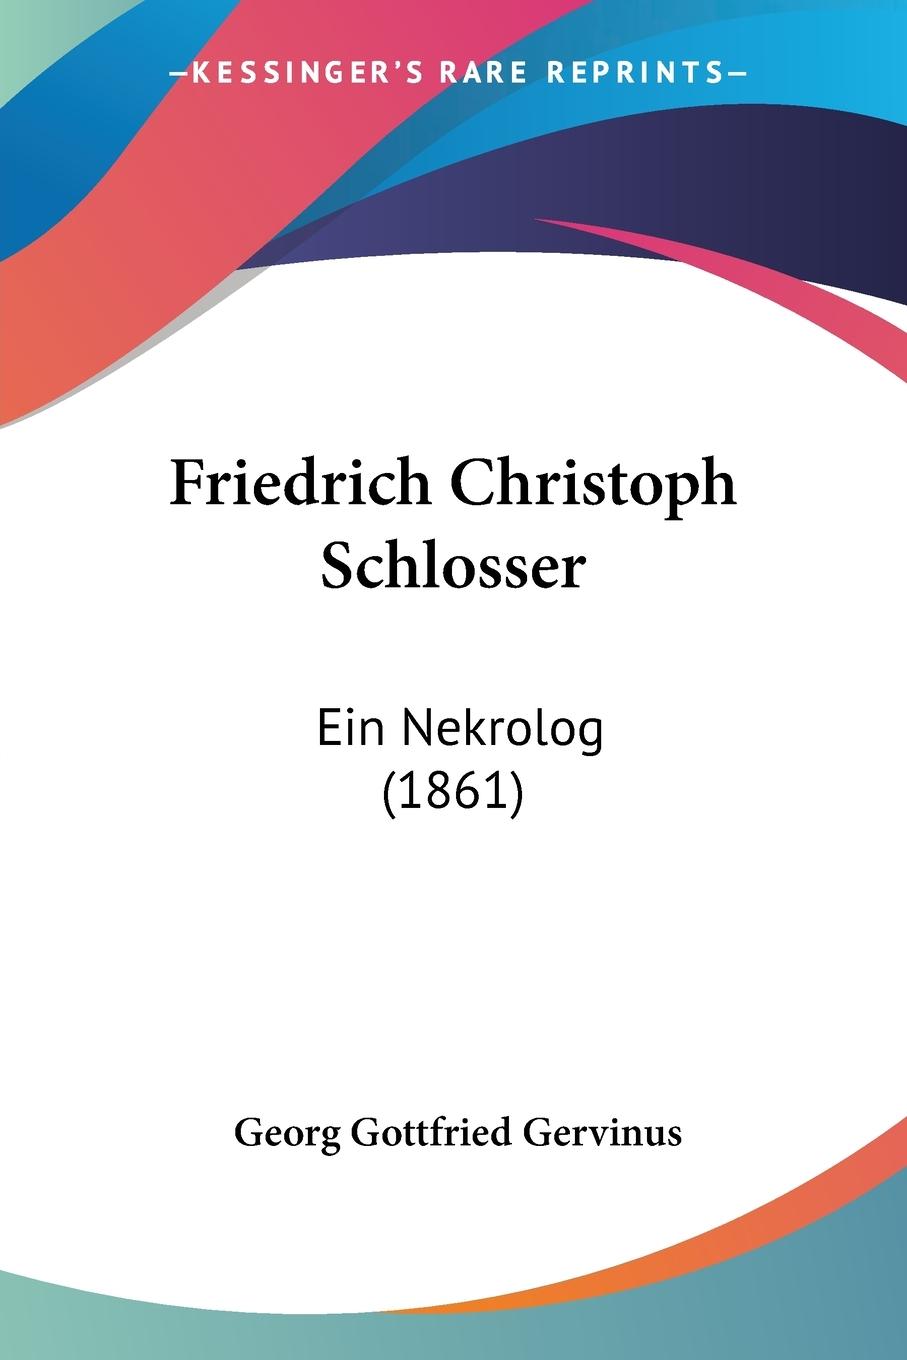 Friedrich Christoph Schlosser - Gervinus, Georg Gottfried